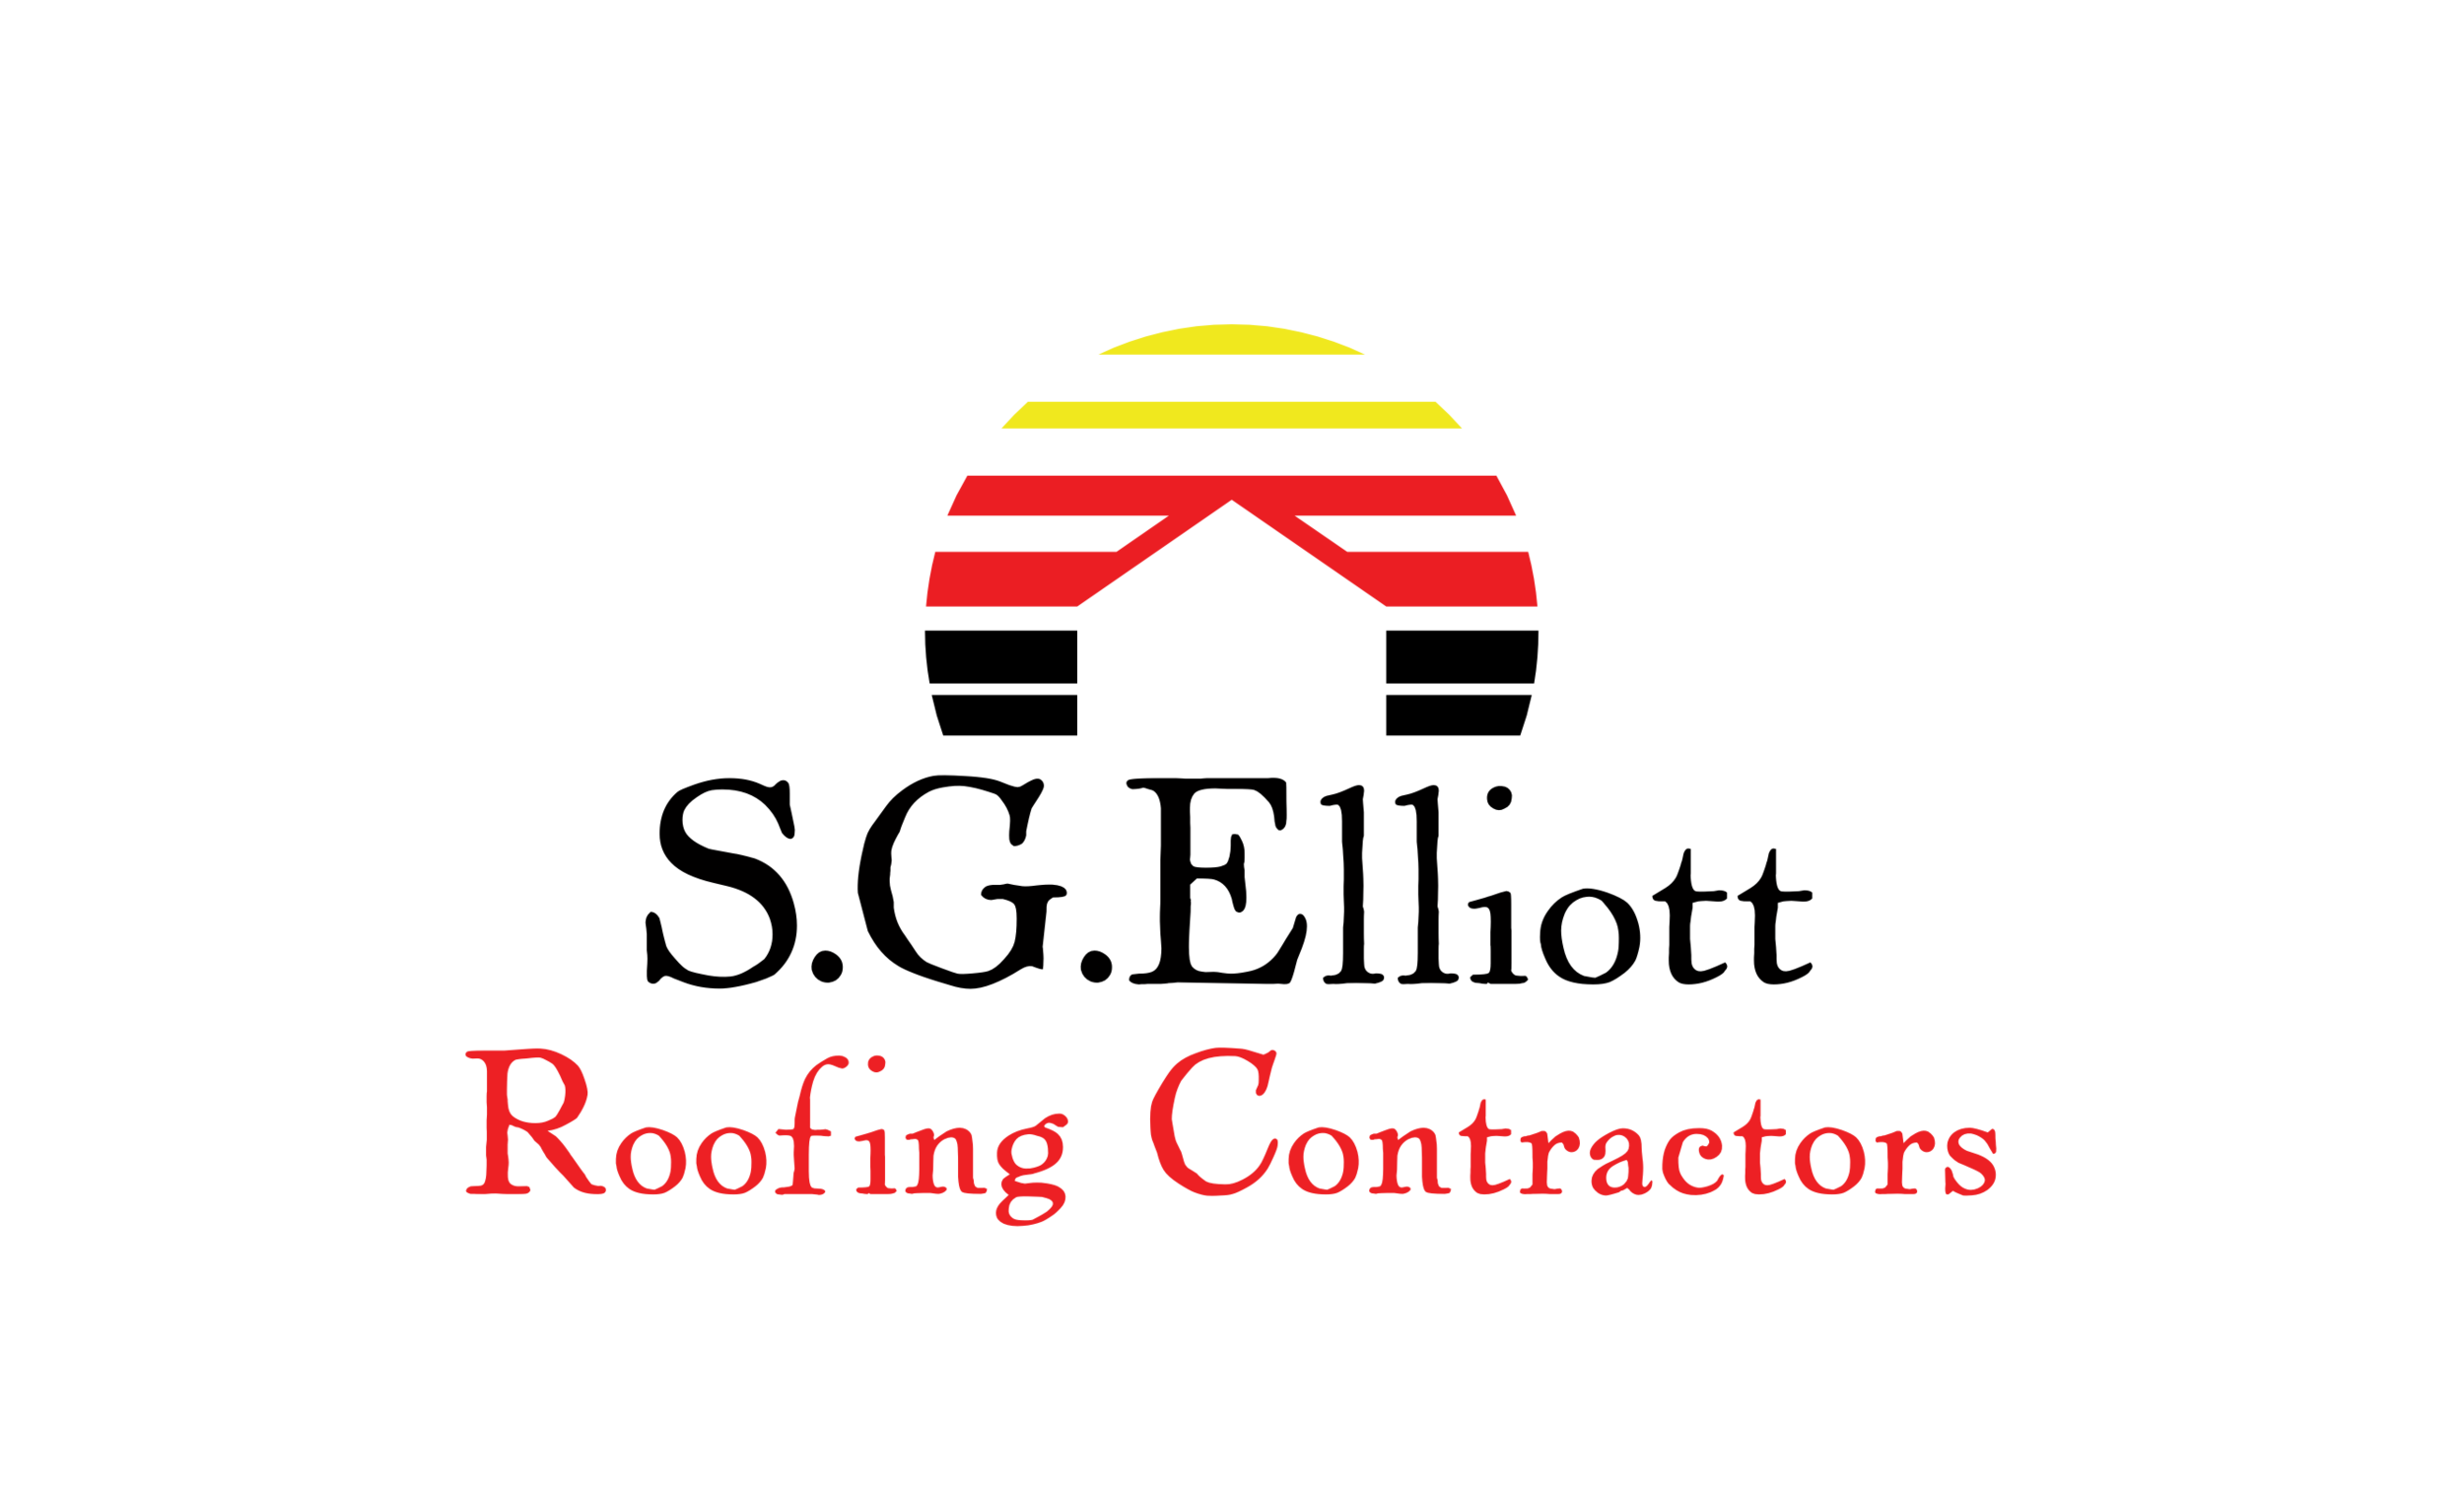 D&S Elliott Roofing Limited, Godalming Surrey - Roofing Contractors